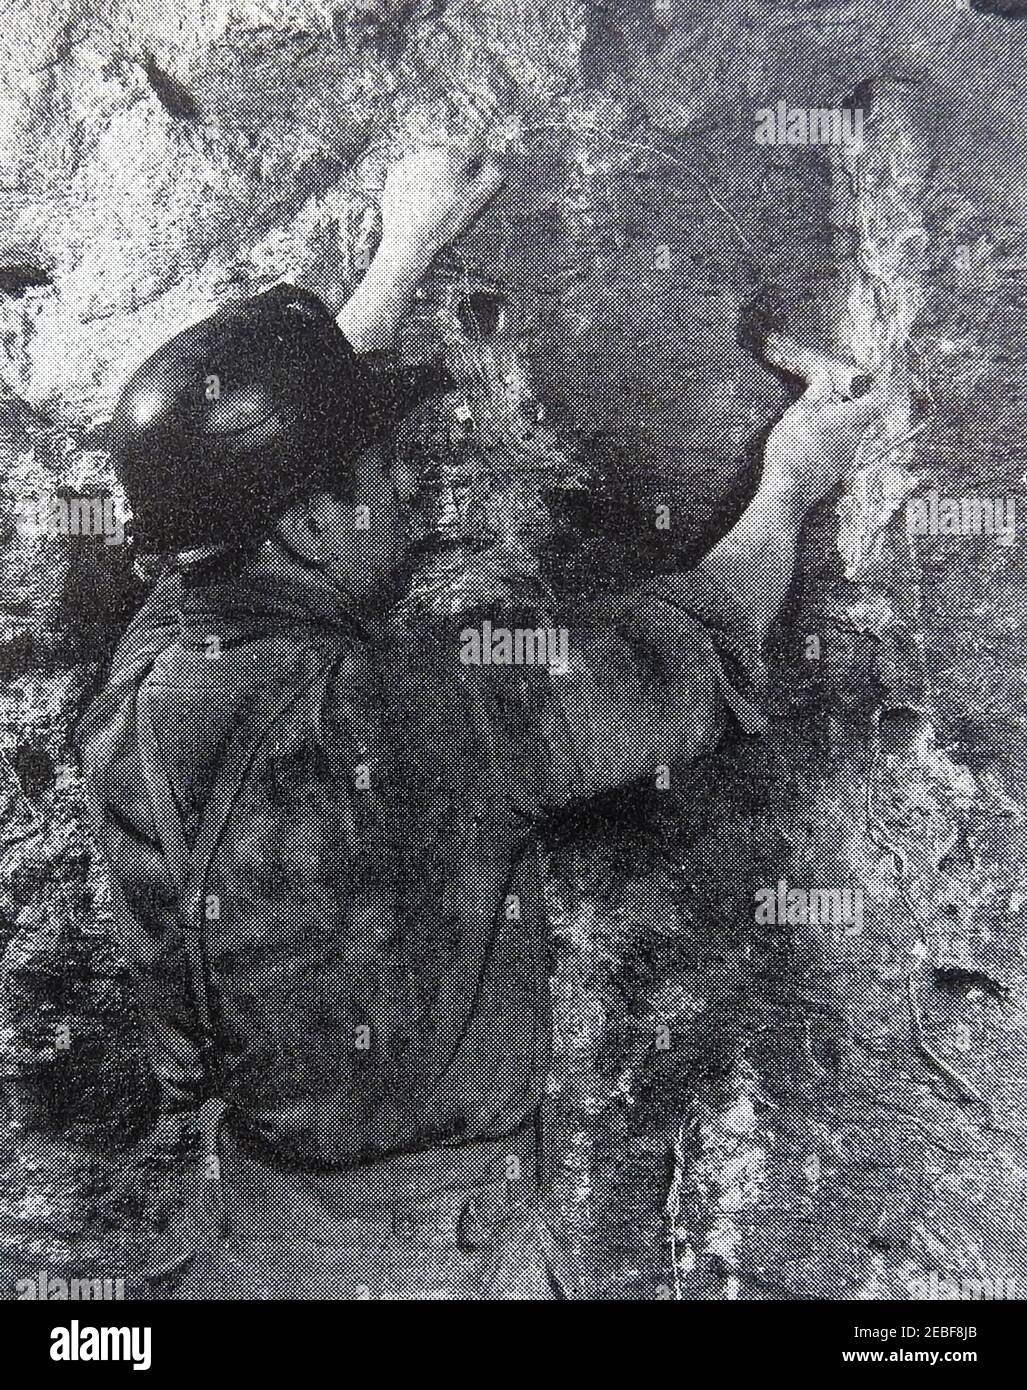 Une photographie de presse d'un travailleur qui a inséré des charges explosives sous terre à l'ancienne mine d'anyhydrite à Billingha, dans le nord de l'Angleterre. L'anhydrite (sulfate de calcium) a été extraite à Billingham de 1927 à 1971 sur une période de 44 ans , obtenant plus de 33 millions de tonnes. Seulement 50 % du minerai a été extrait avant la fermeture de la mine. Banque D'Images